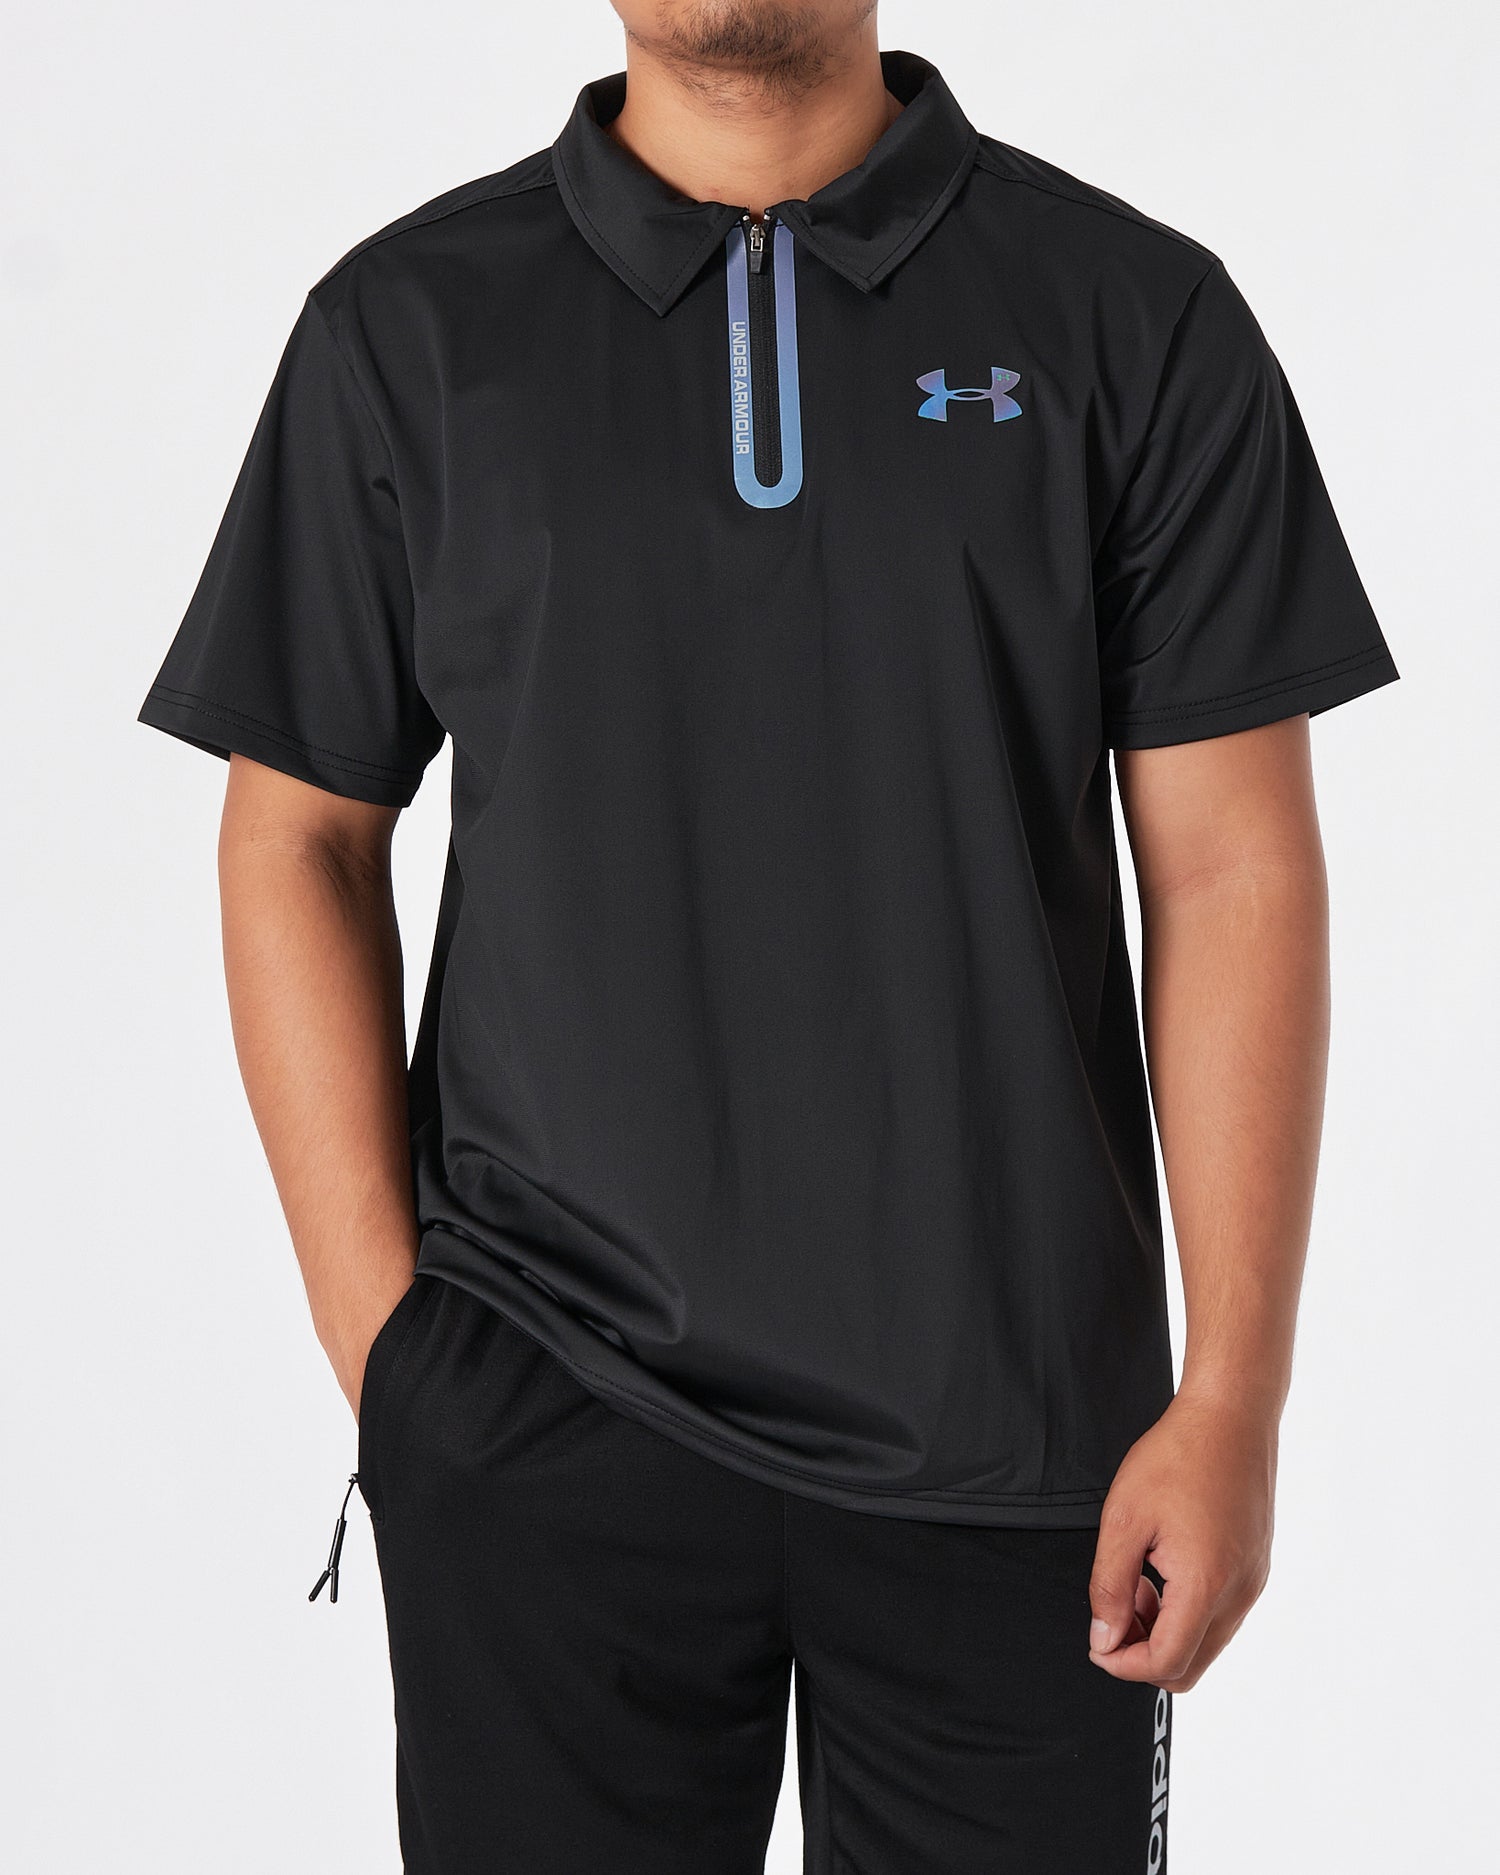 UA Lightweight Logo Printed Men Black Polo Shirt 15.50